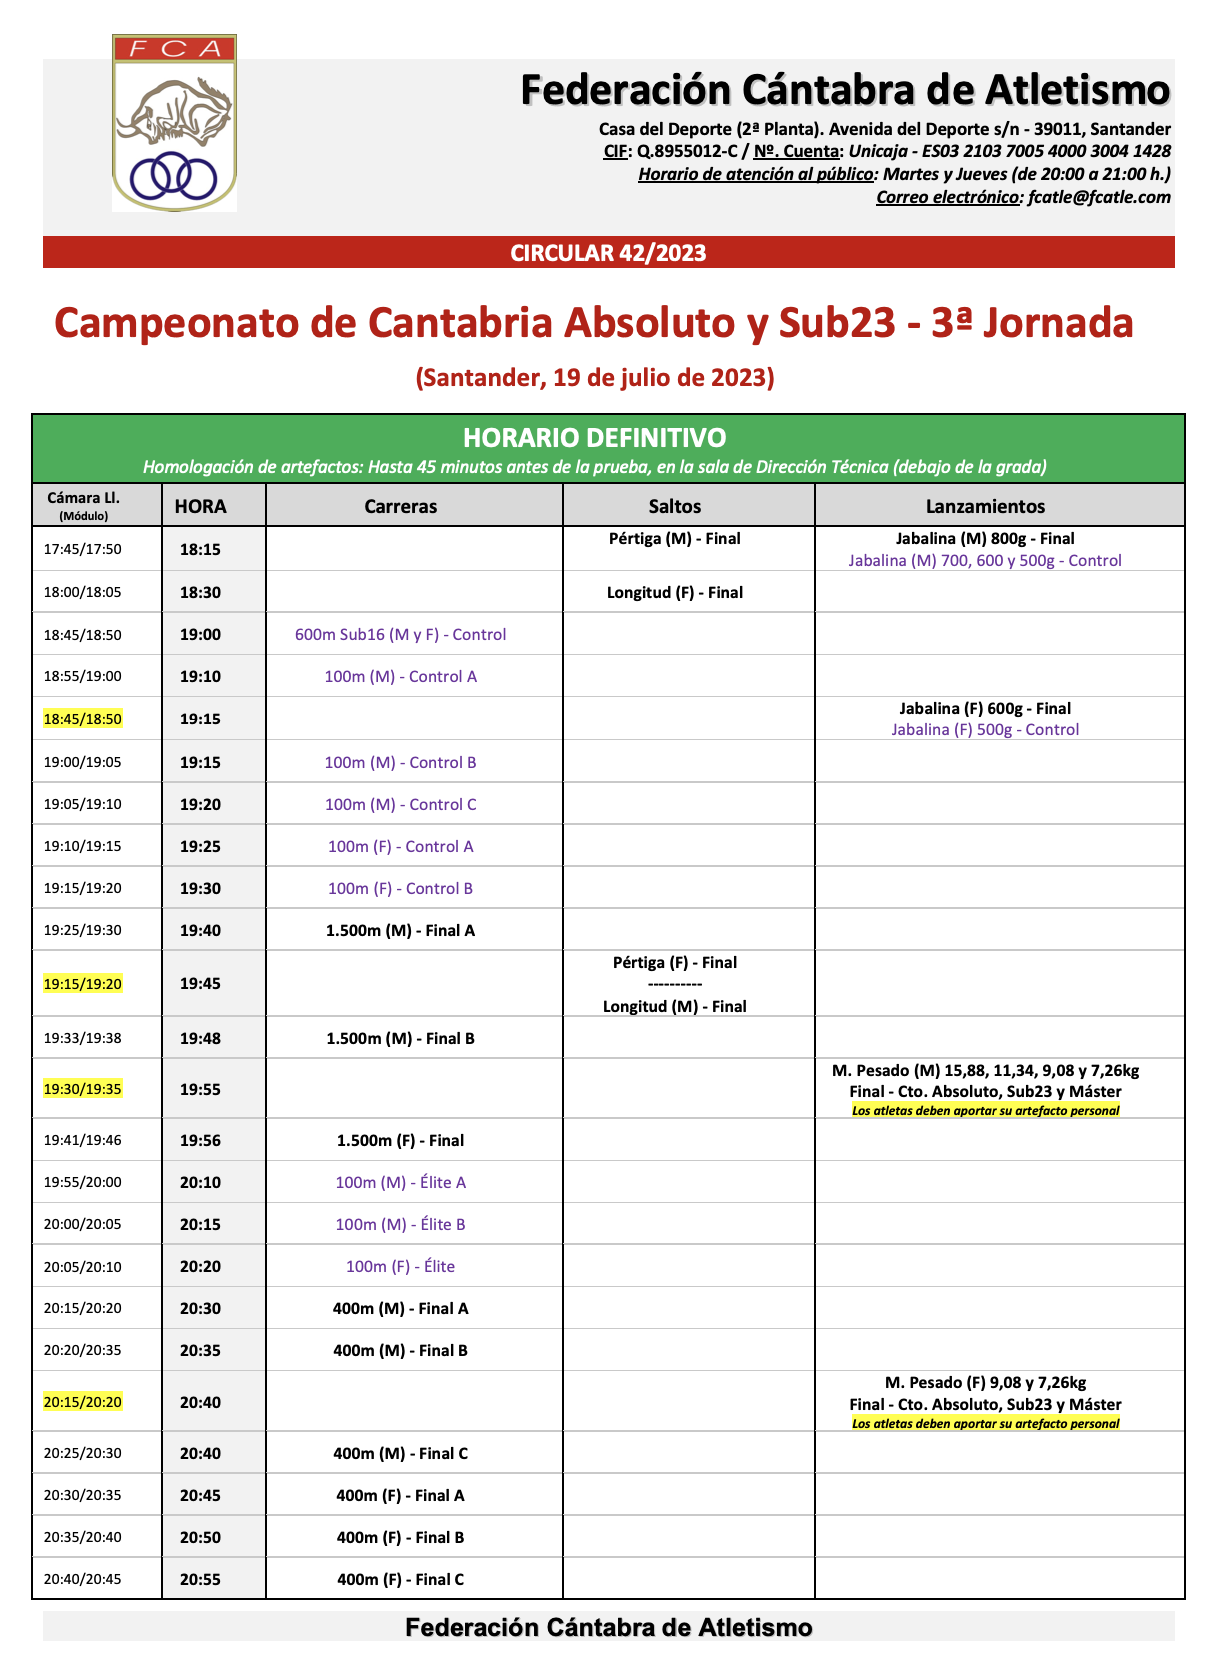 Campeonato de Cantabria Absoluto y Sub23 - 3ª Jornada @ Santander, Cantabria